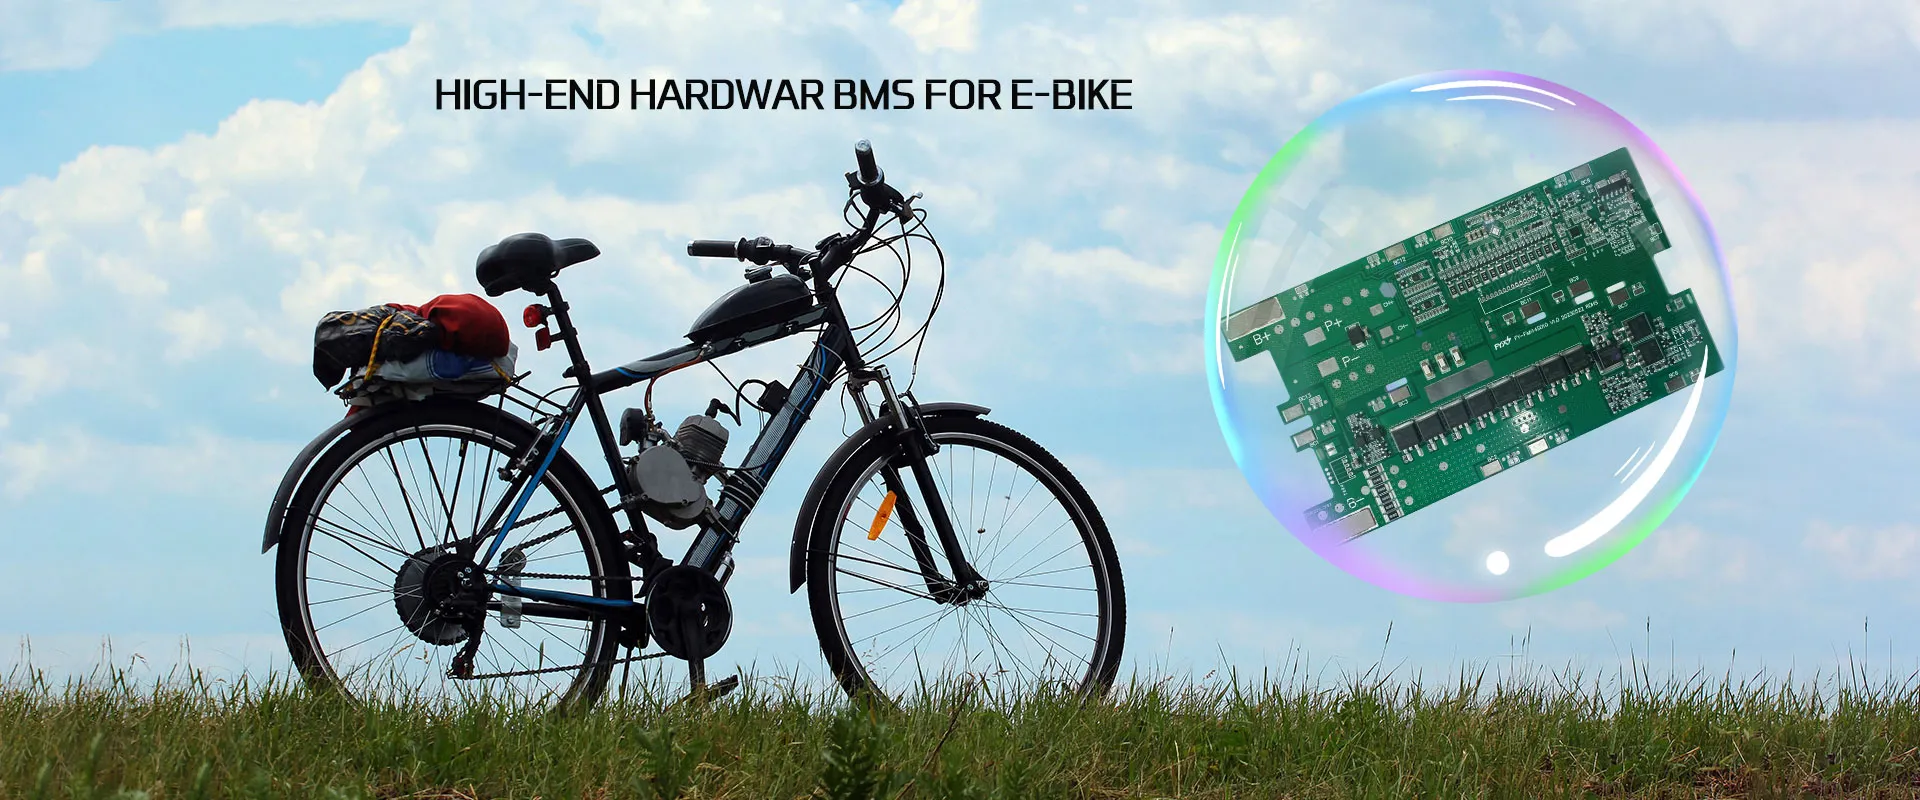 BMS สำหรับซัพพลายเออร์ E-Bike